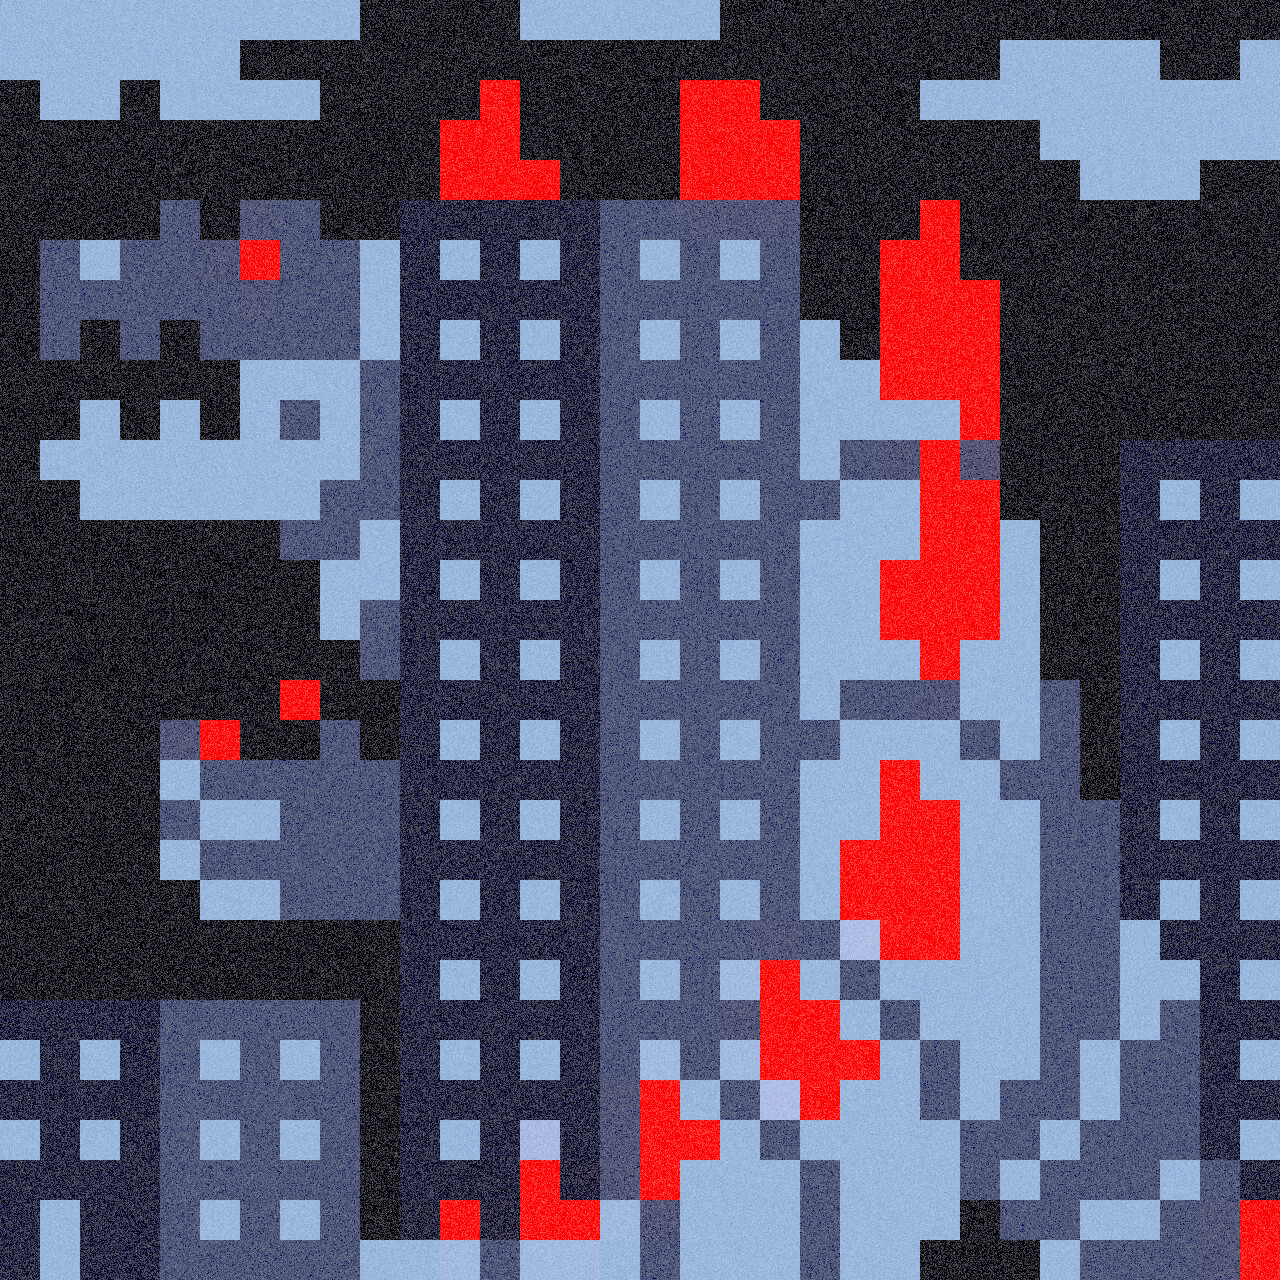 godzilla pixel art grid